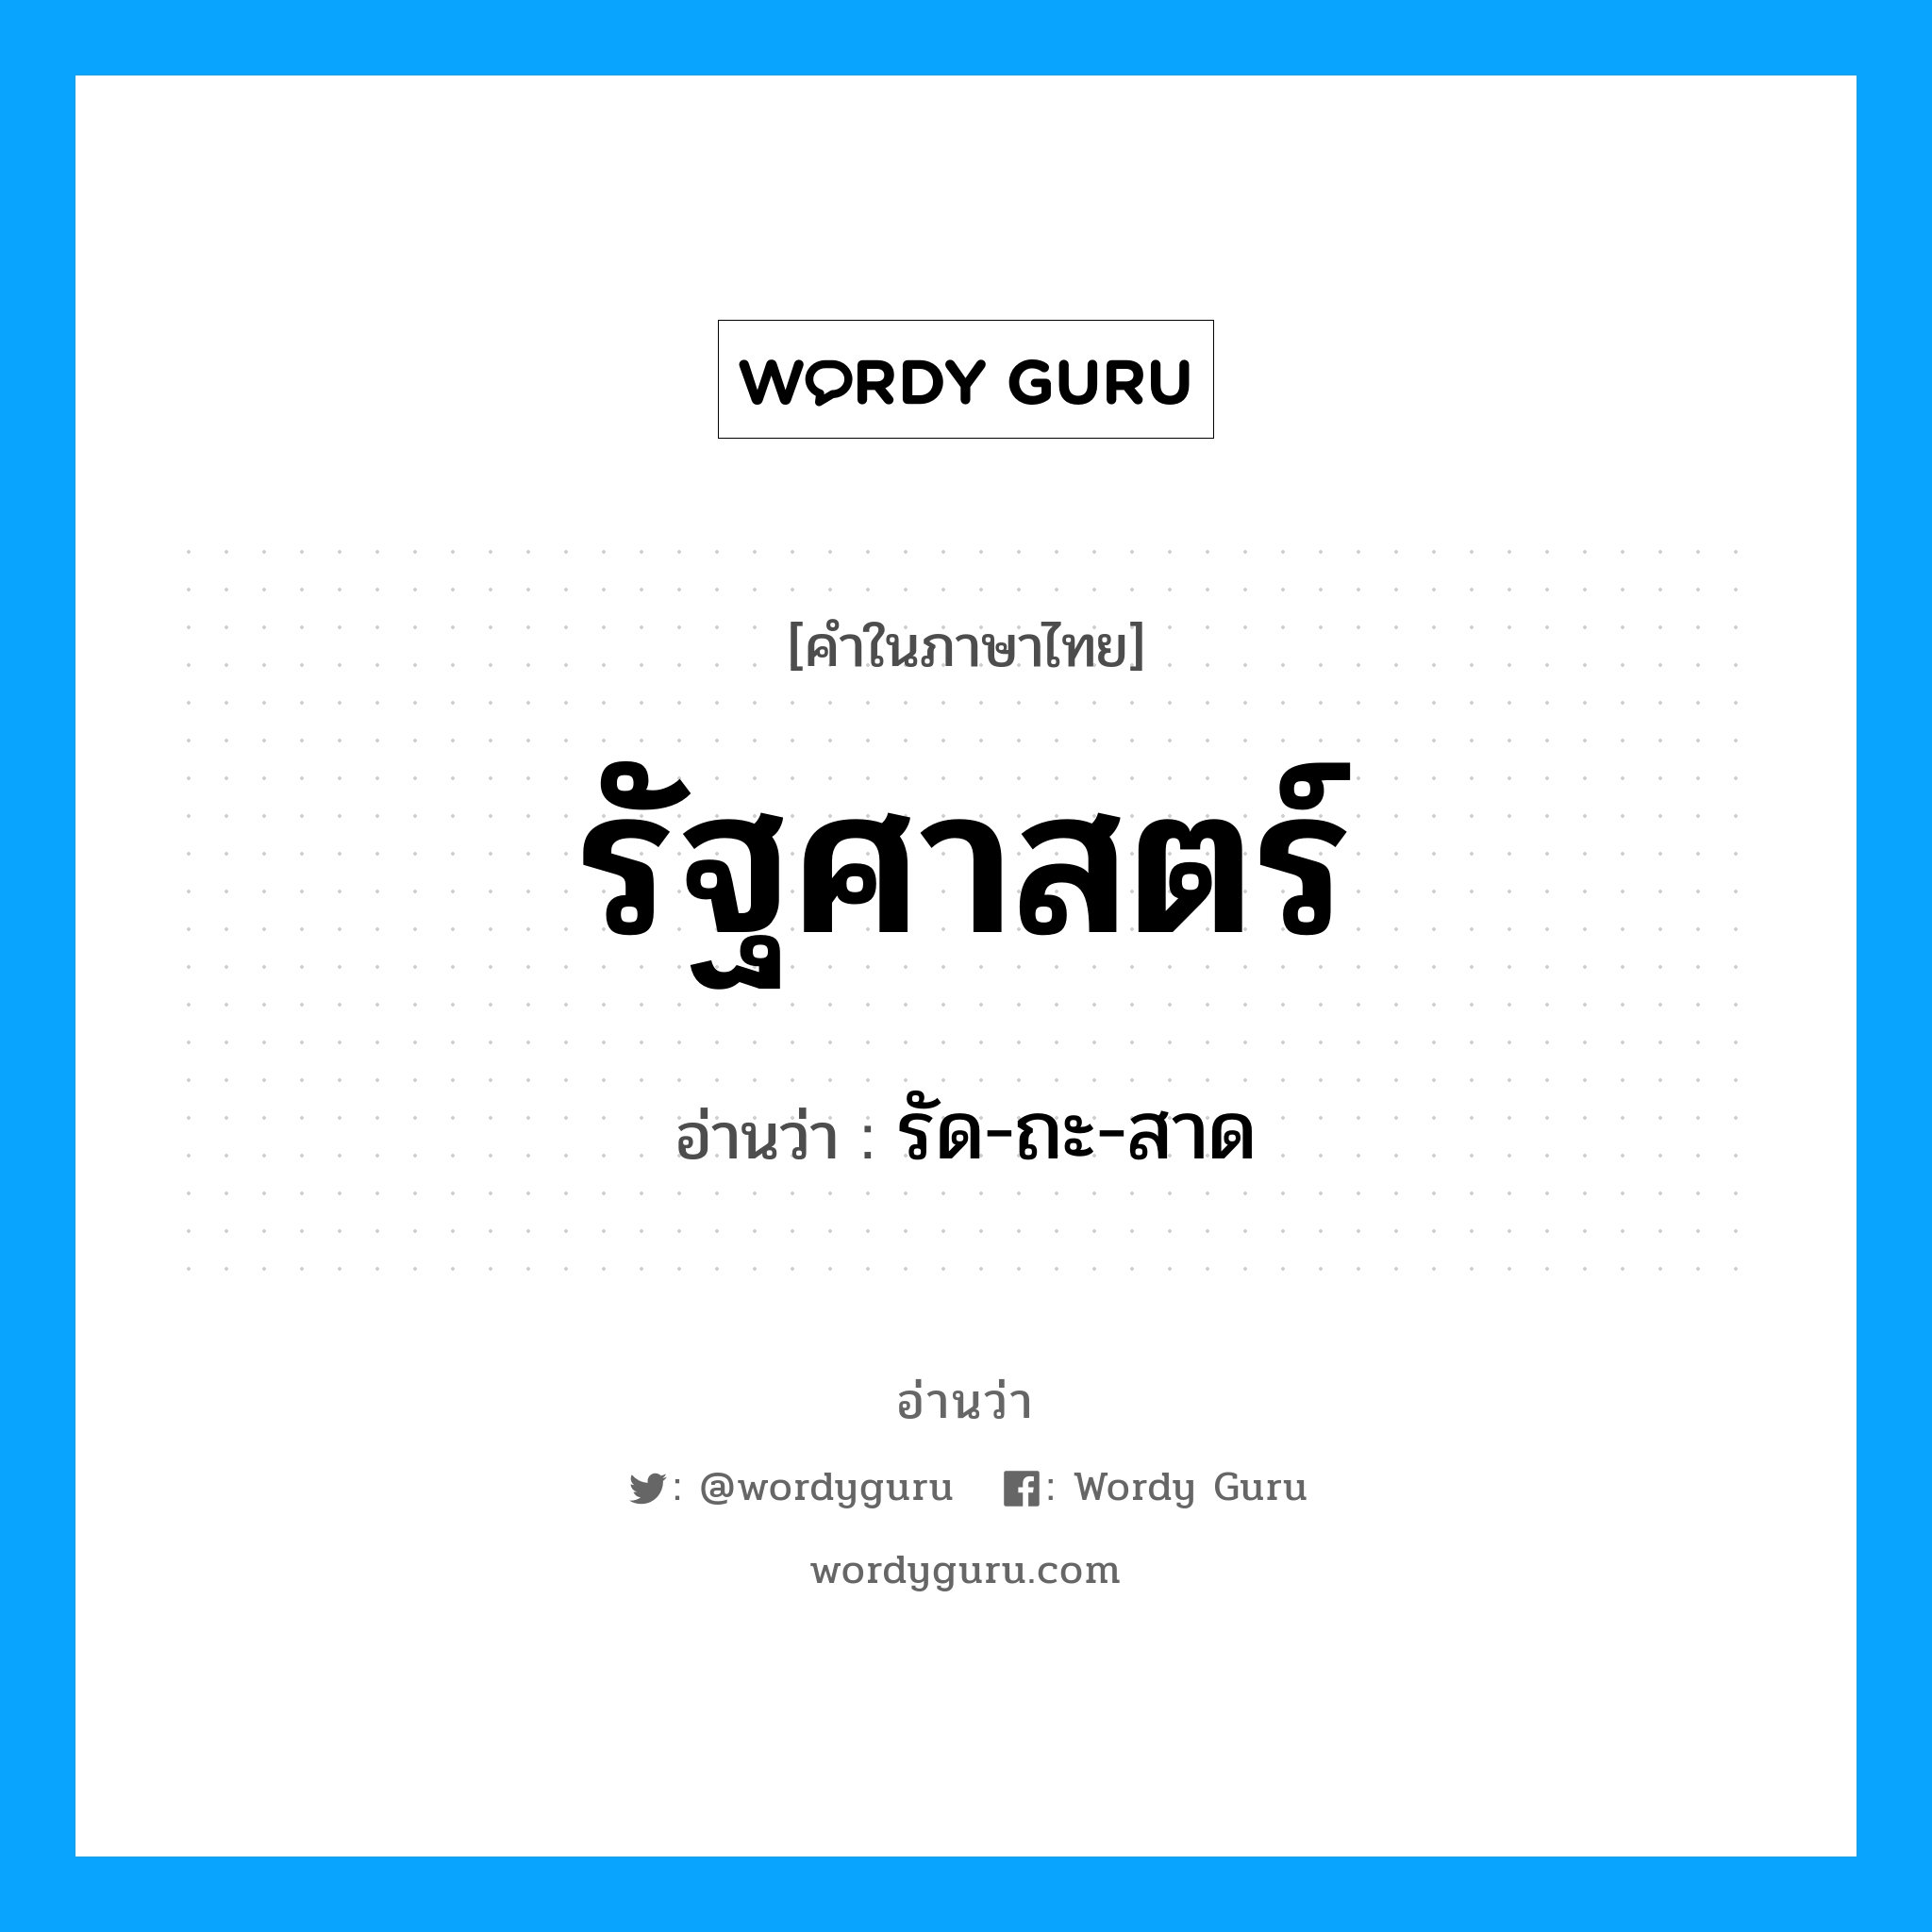 รัด-ถะ-สาด เป็นคำอ่านของคำไหน?, คำในภาษาไทย รัด-ถะ-สาด อ่านว่า รัฐศาสตร์